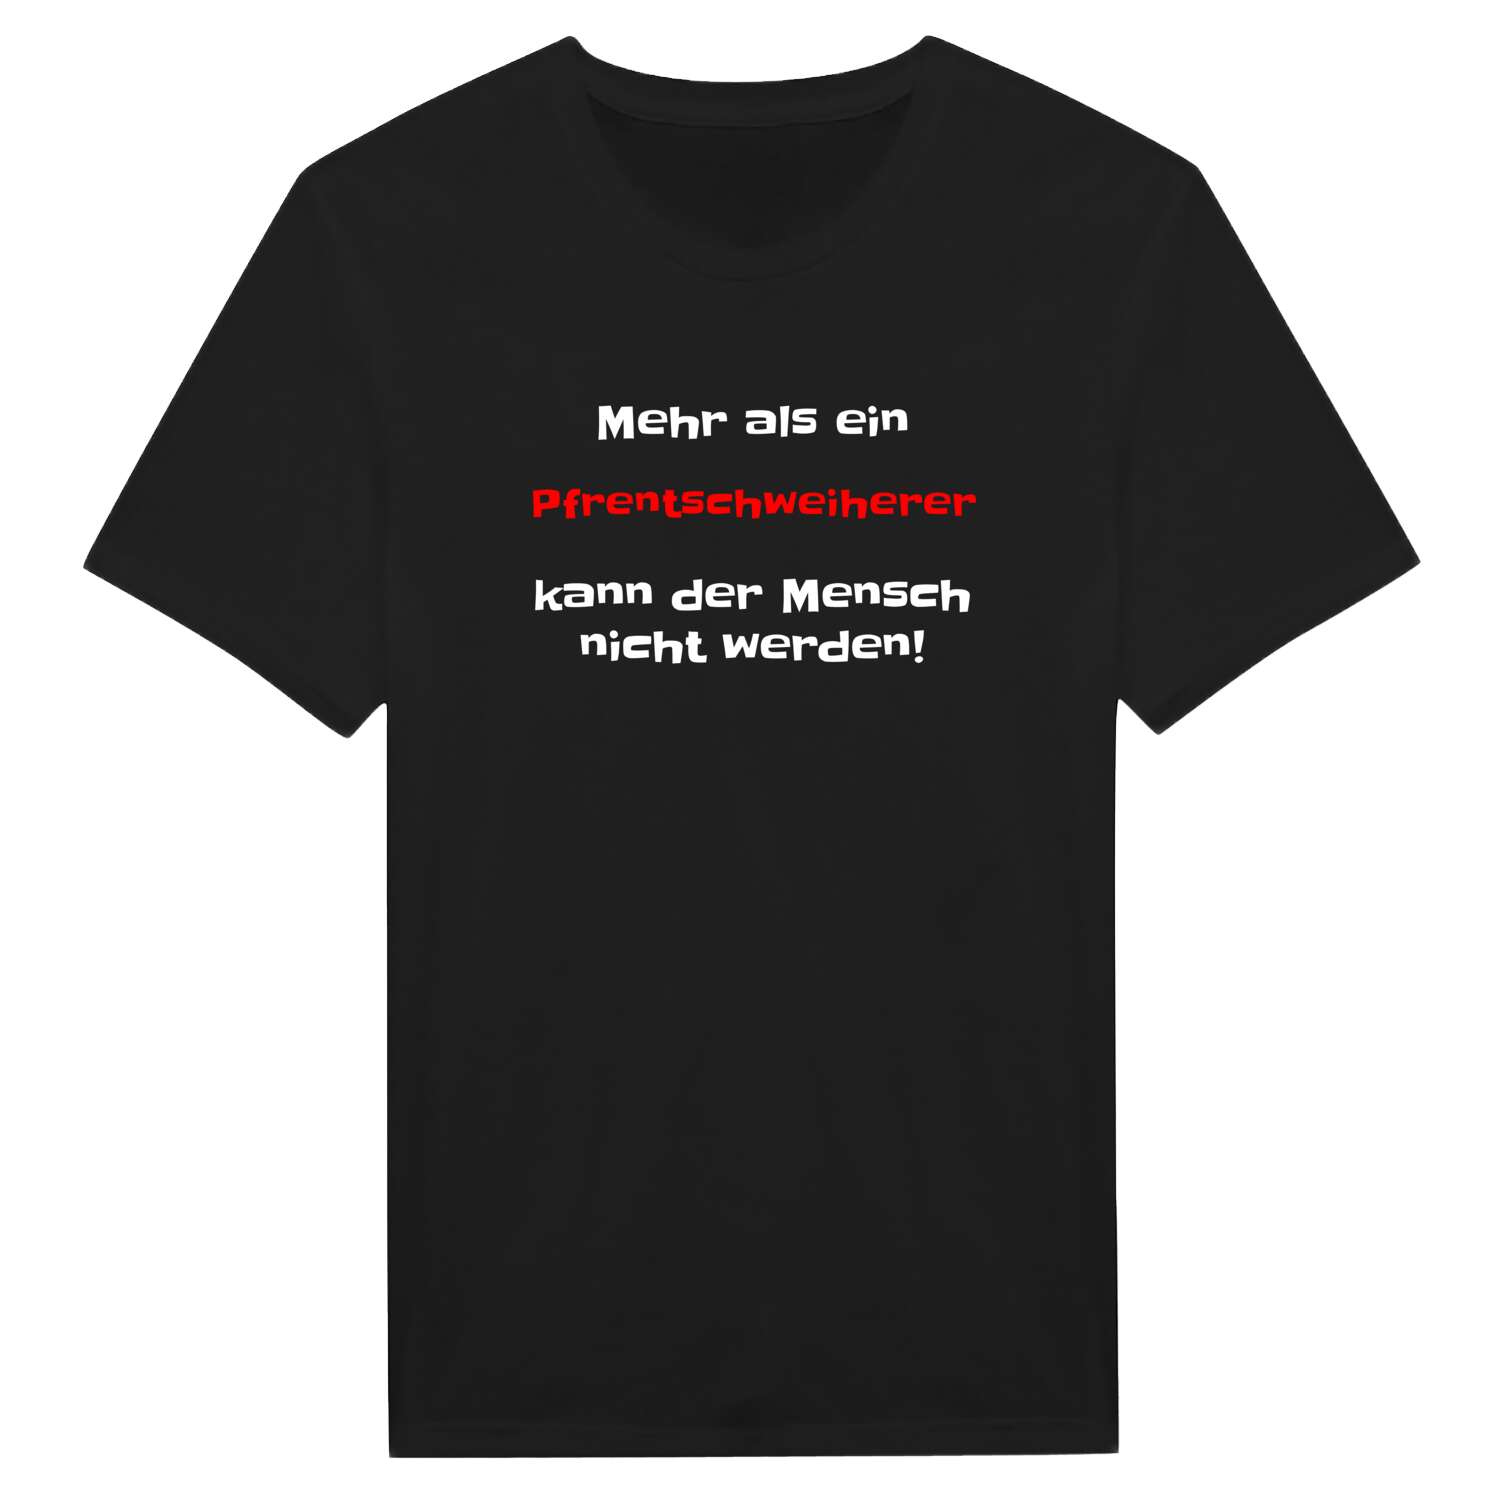 Pfrentschweiher T-Shirt »Mehr als ein«